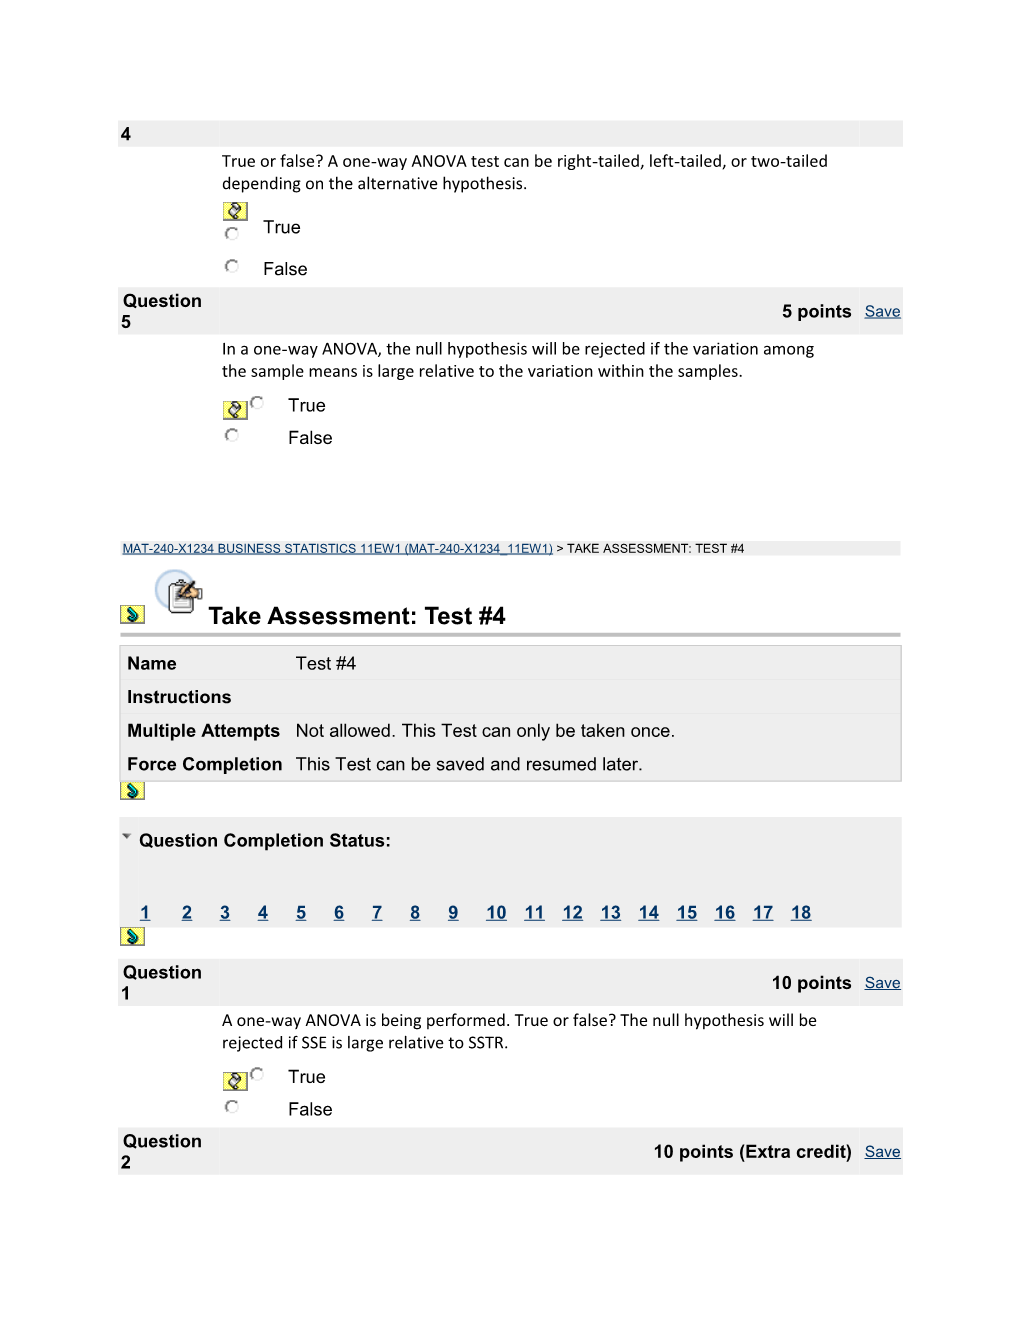 Take Assessment: Test #4